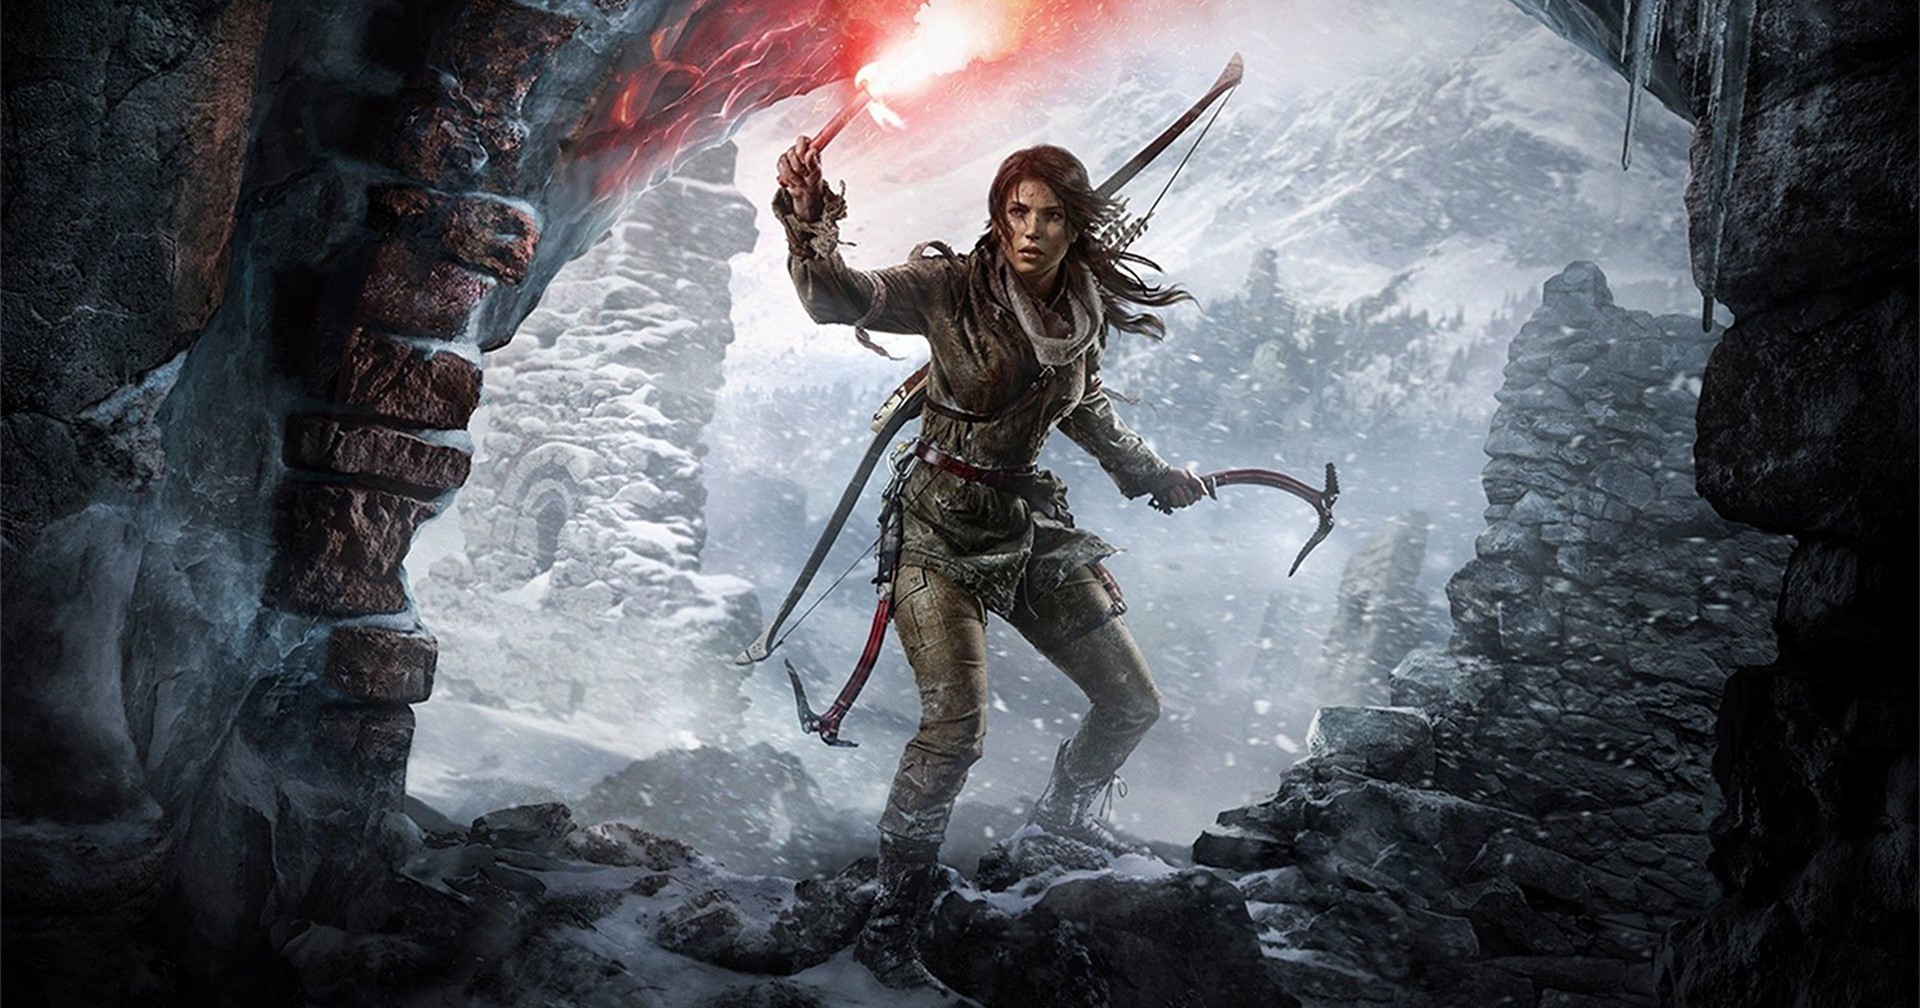 ข่าวลือ Amazon เตรียมยื่น 600 ล้านเหรียญซื้อแฟรนไชส์ Tomb Raider